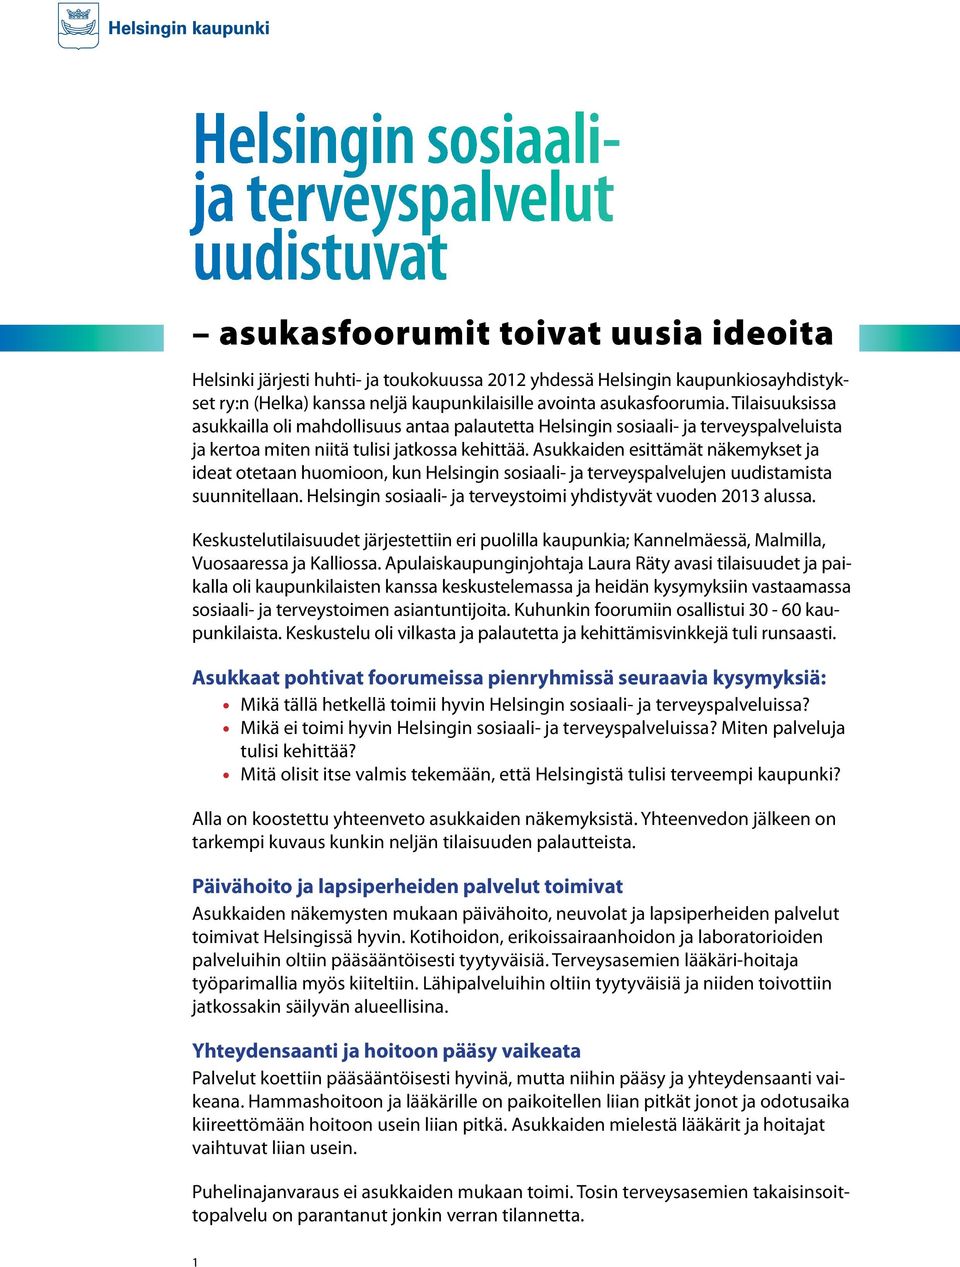 Asukkaiden esittämät näkemykset ja ideat otetaan huomioon, kun Helsingin sosiaali- ja terveyspalvelujen uudistamista suunnitellaan. Helsingin sosiaali- ja terveystoimi yhdistyvät vuoden 2013 alussa.